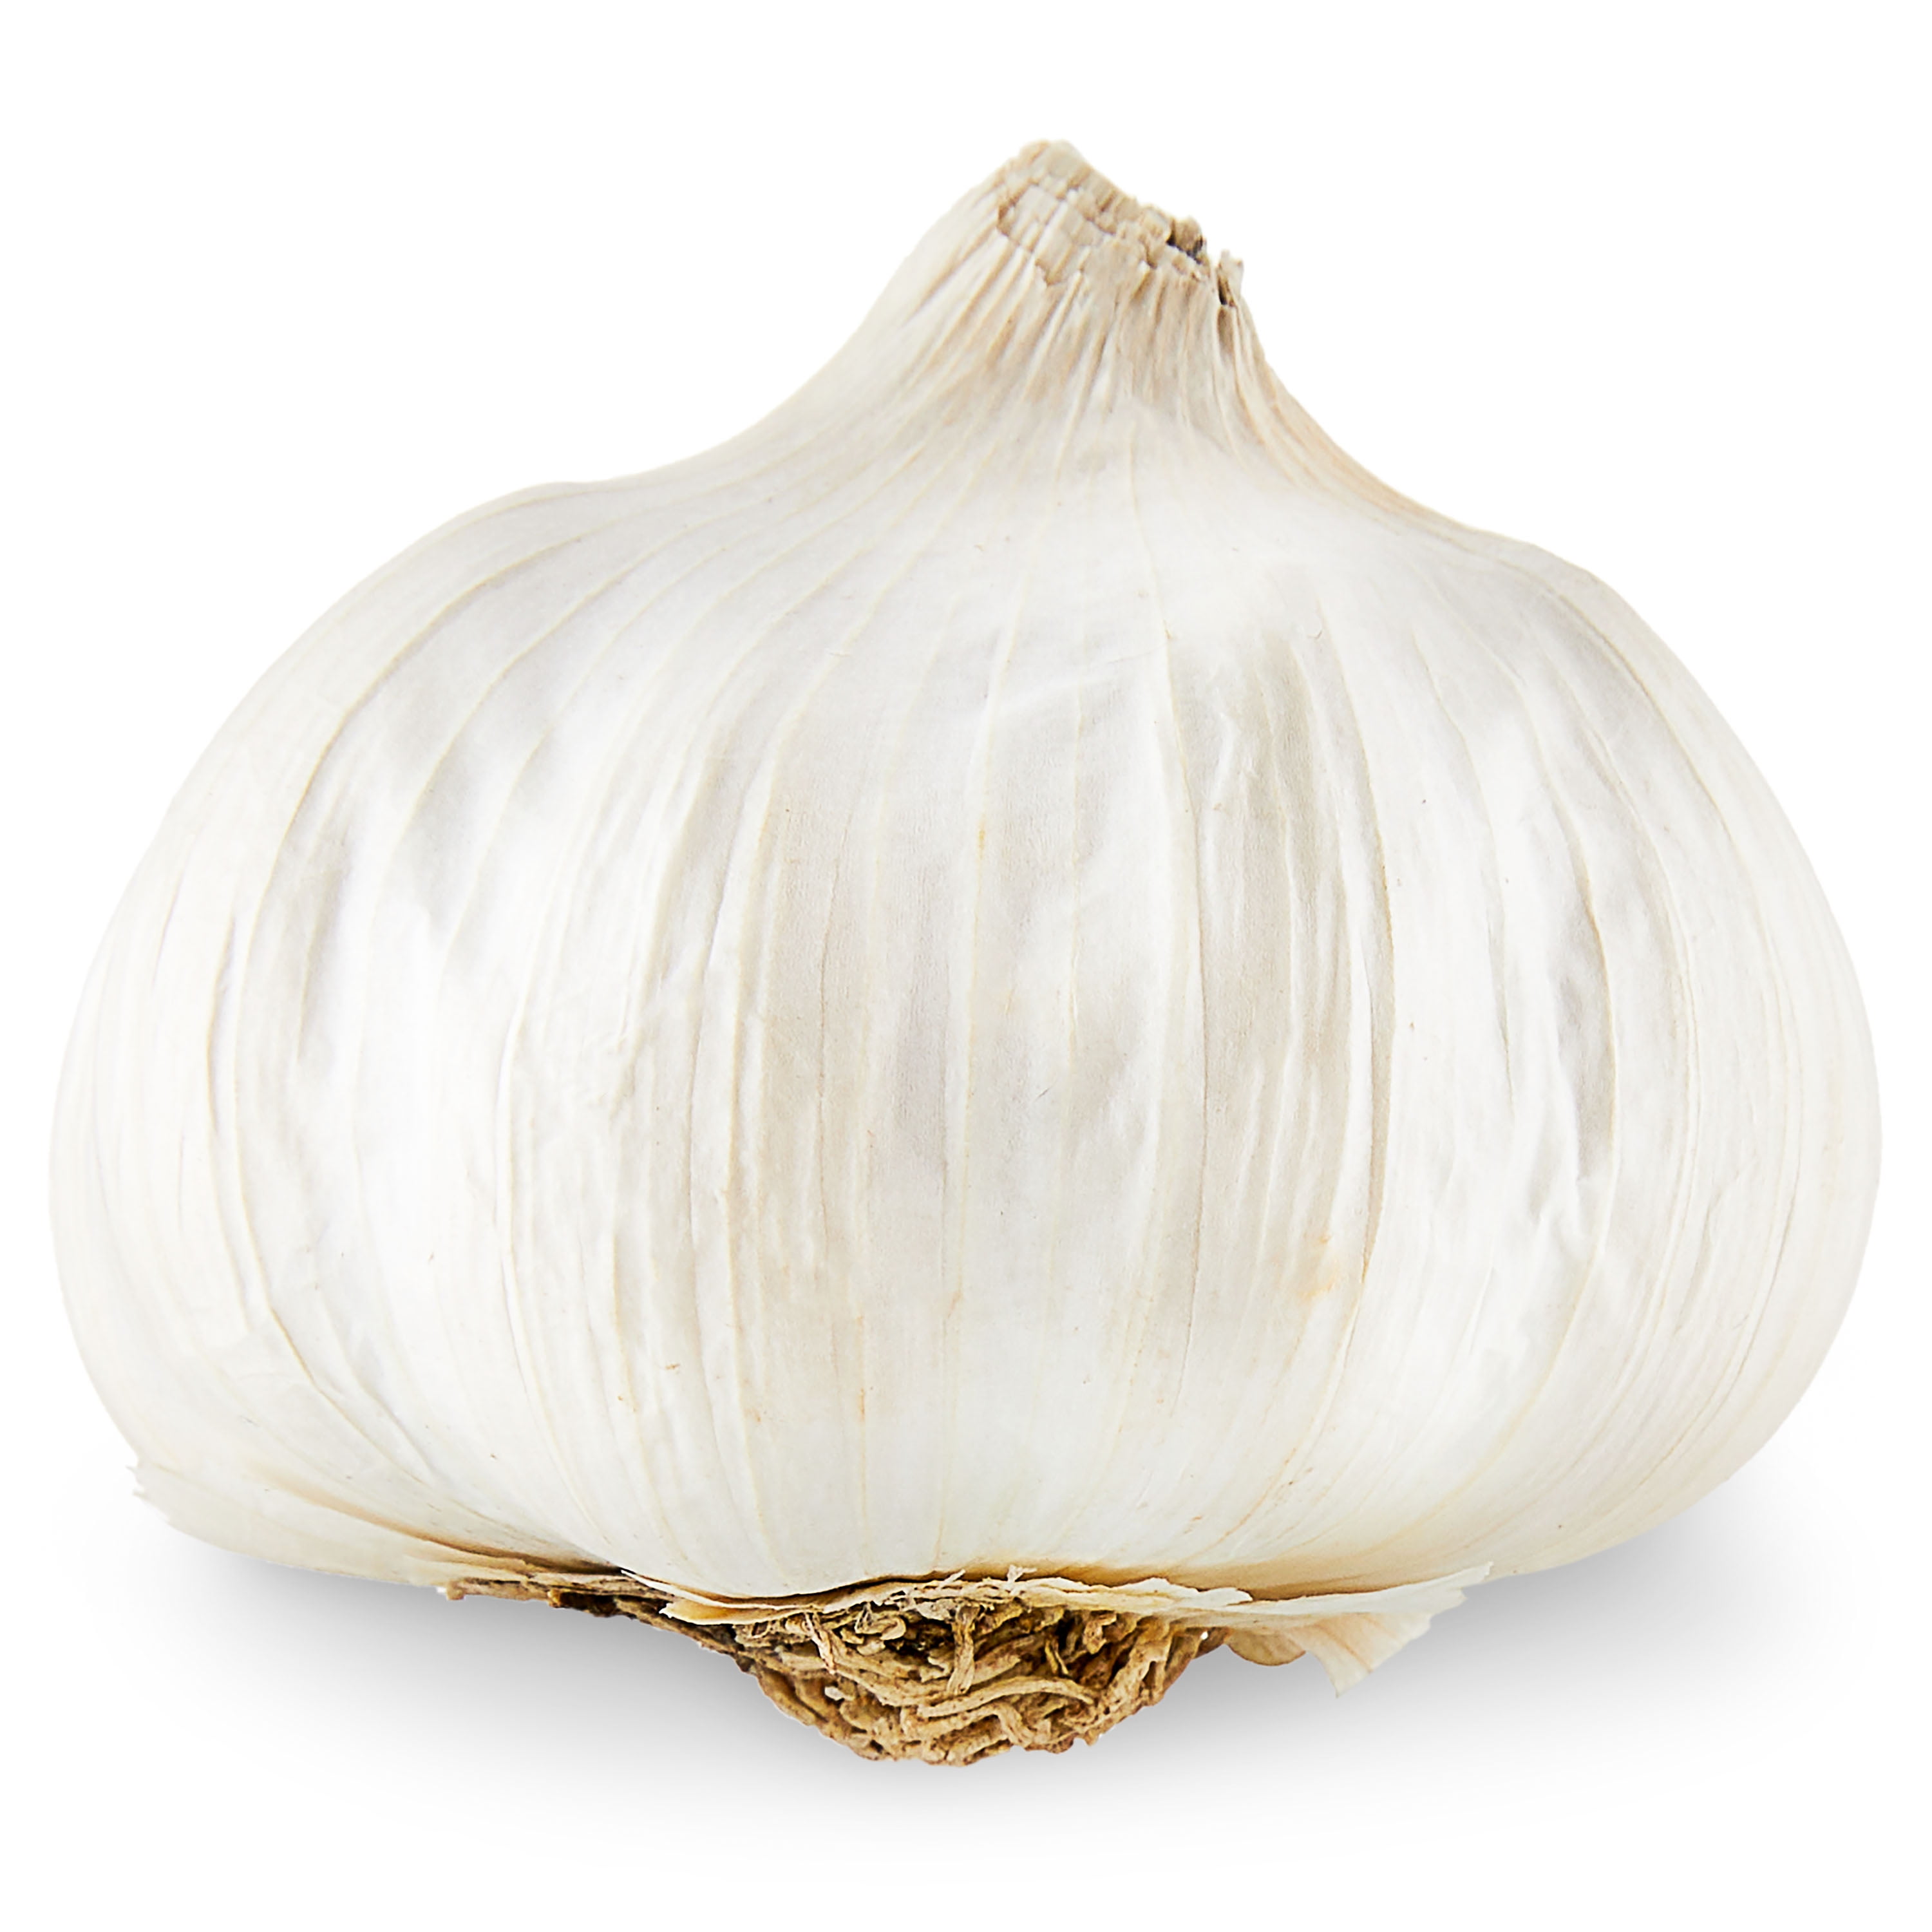 Garlic Bulb, Each 